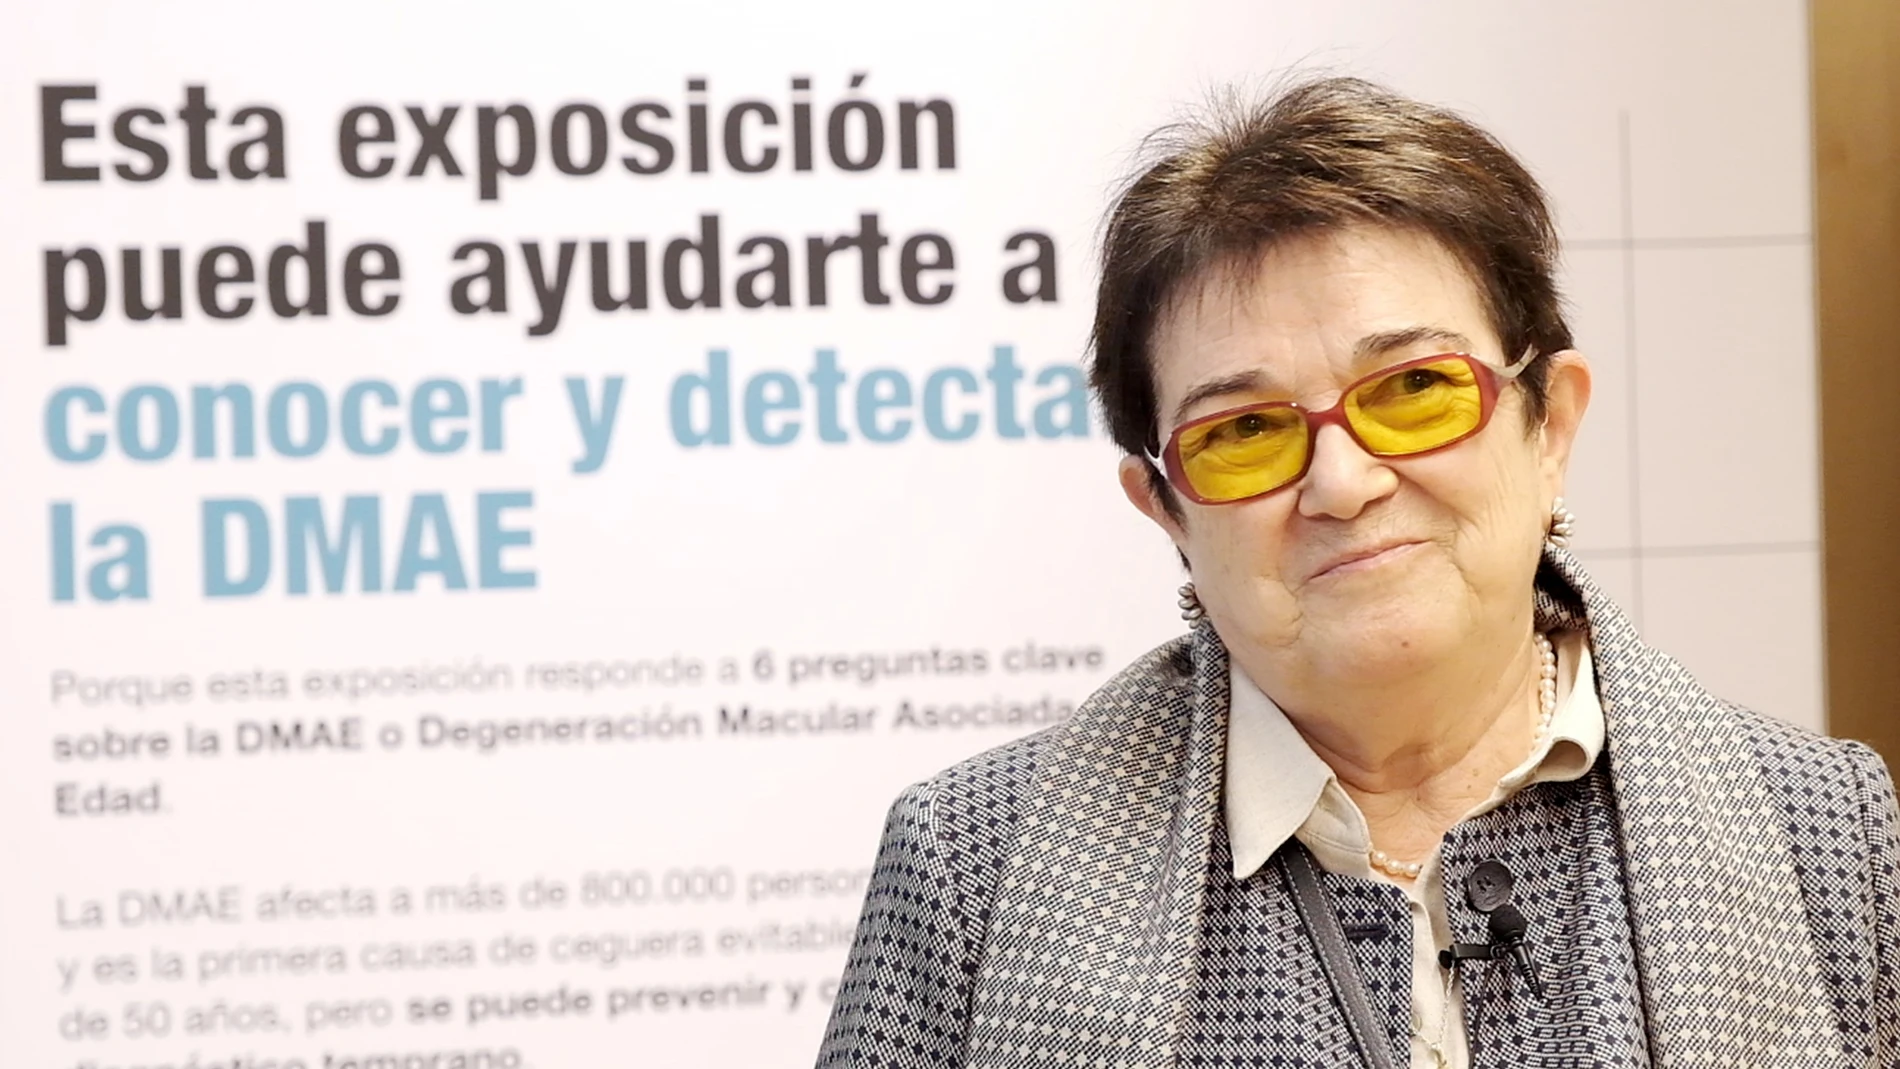 Primitiva Martín fue diagnosticada de DMAE a los 39 años. A pesar de que le advirtieron de una posible ceguera, mantiene una buena visión gracias a la constancia en su tratamiento